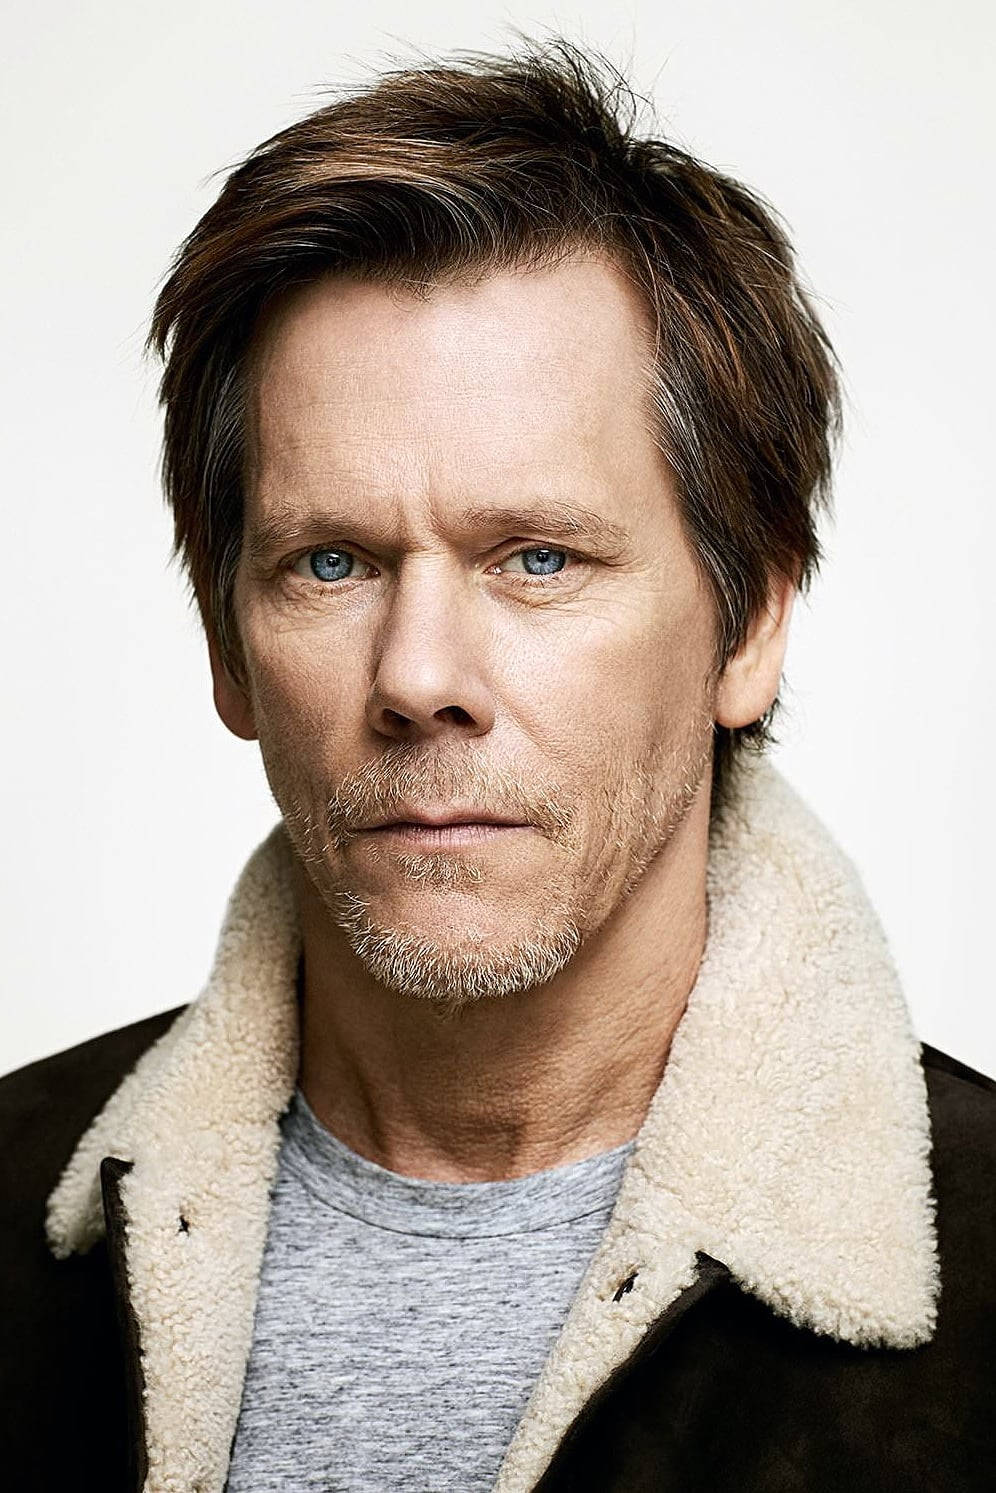 Kevin Bacon In Sweater Portrait Wallpaper